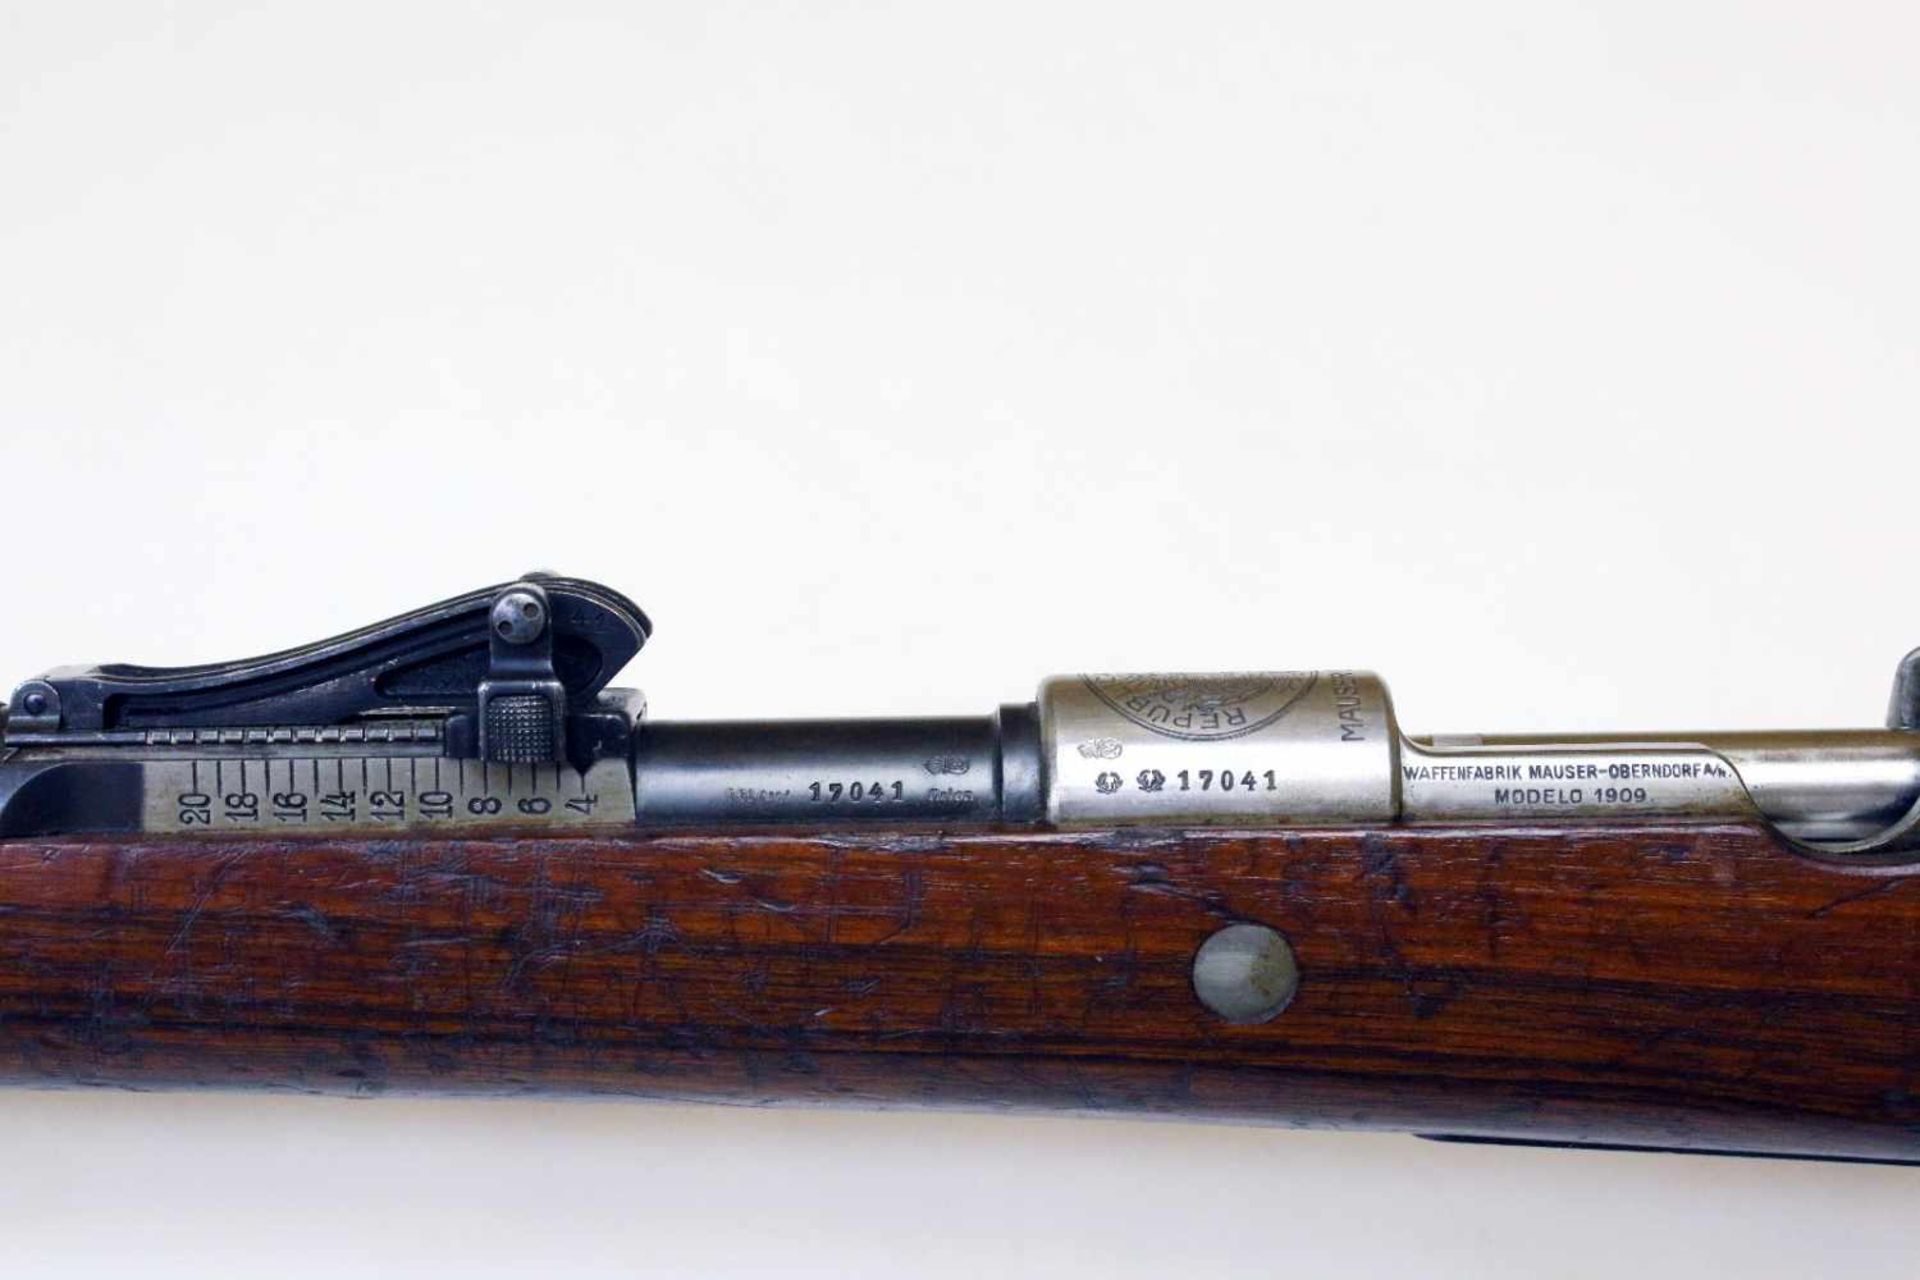 Mausergewehr M1909 Peru Cal. 7,65 x 53mm, Lauf rauh, narbig. Auf der Hülse das peruanische Wappen - Bild 11 aus 16